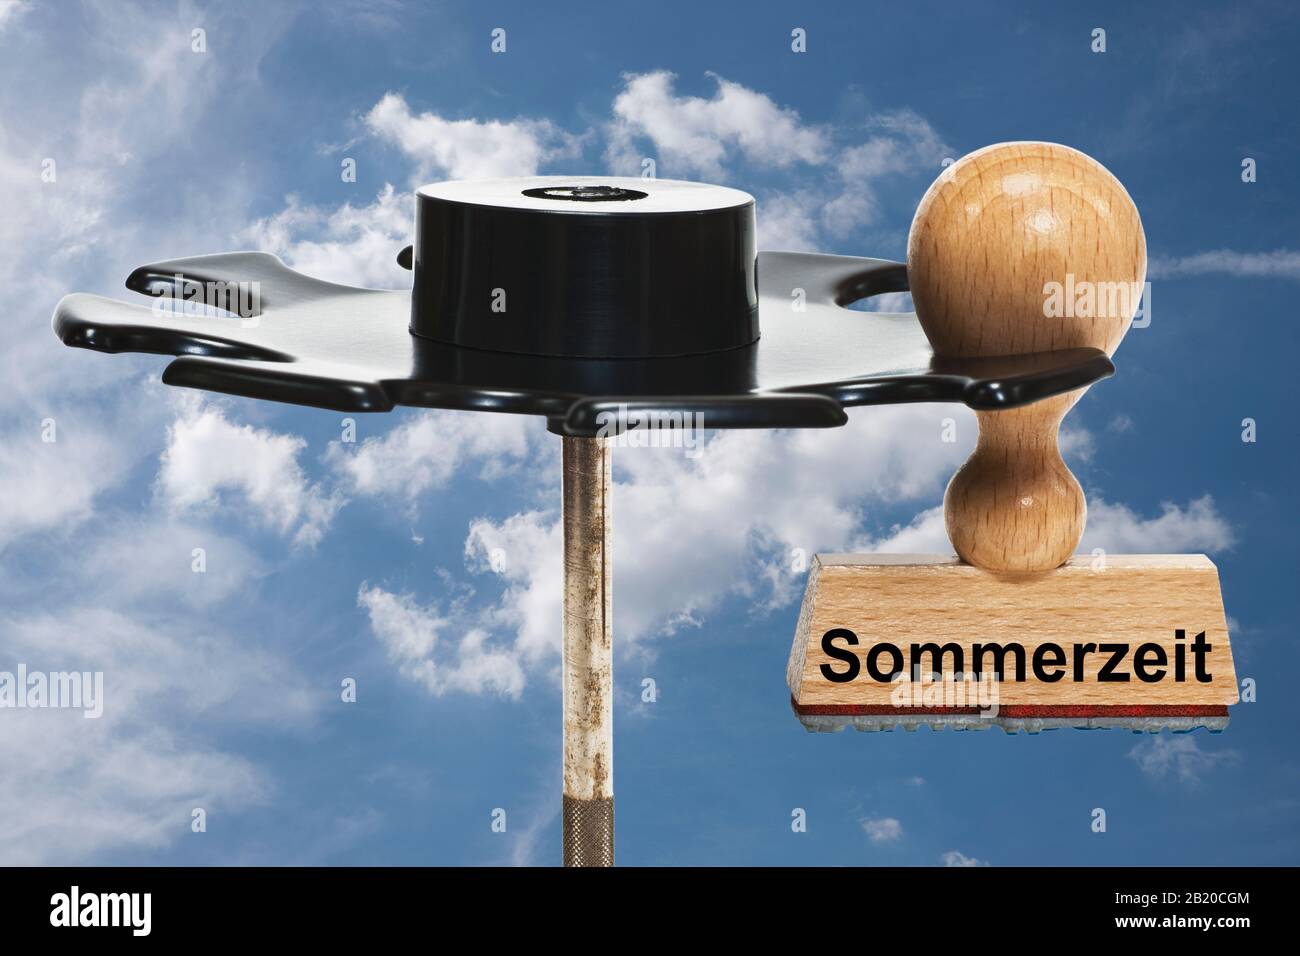 Un timbre avec l'inscription Sommerzeit (Summertime) se trouve dans un porte-timbres, fond du ciel Banque D'Images